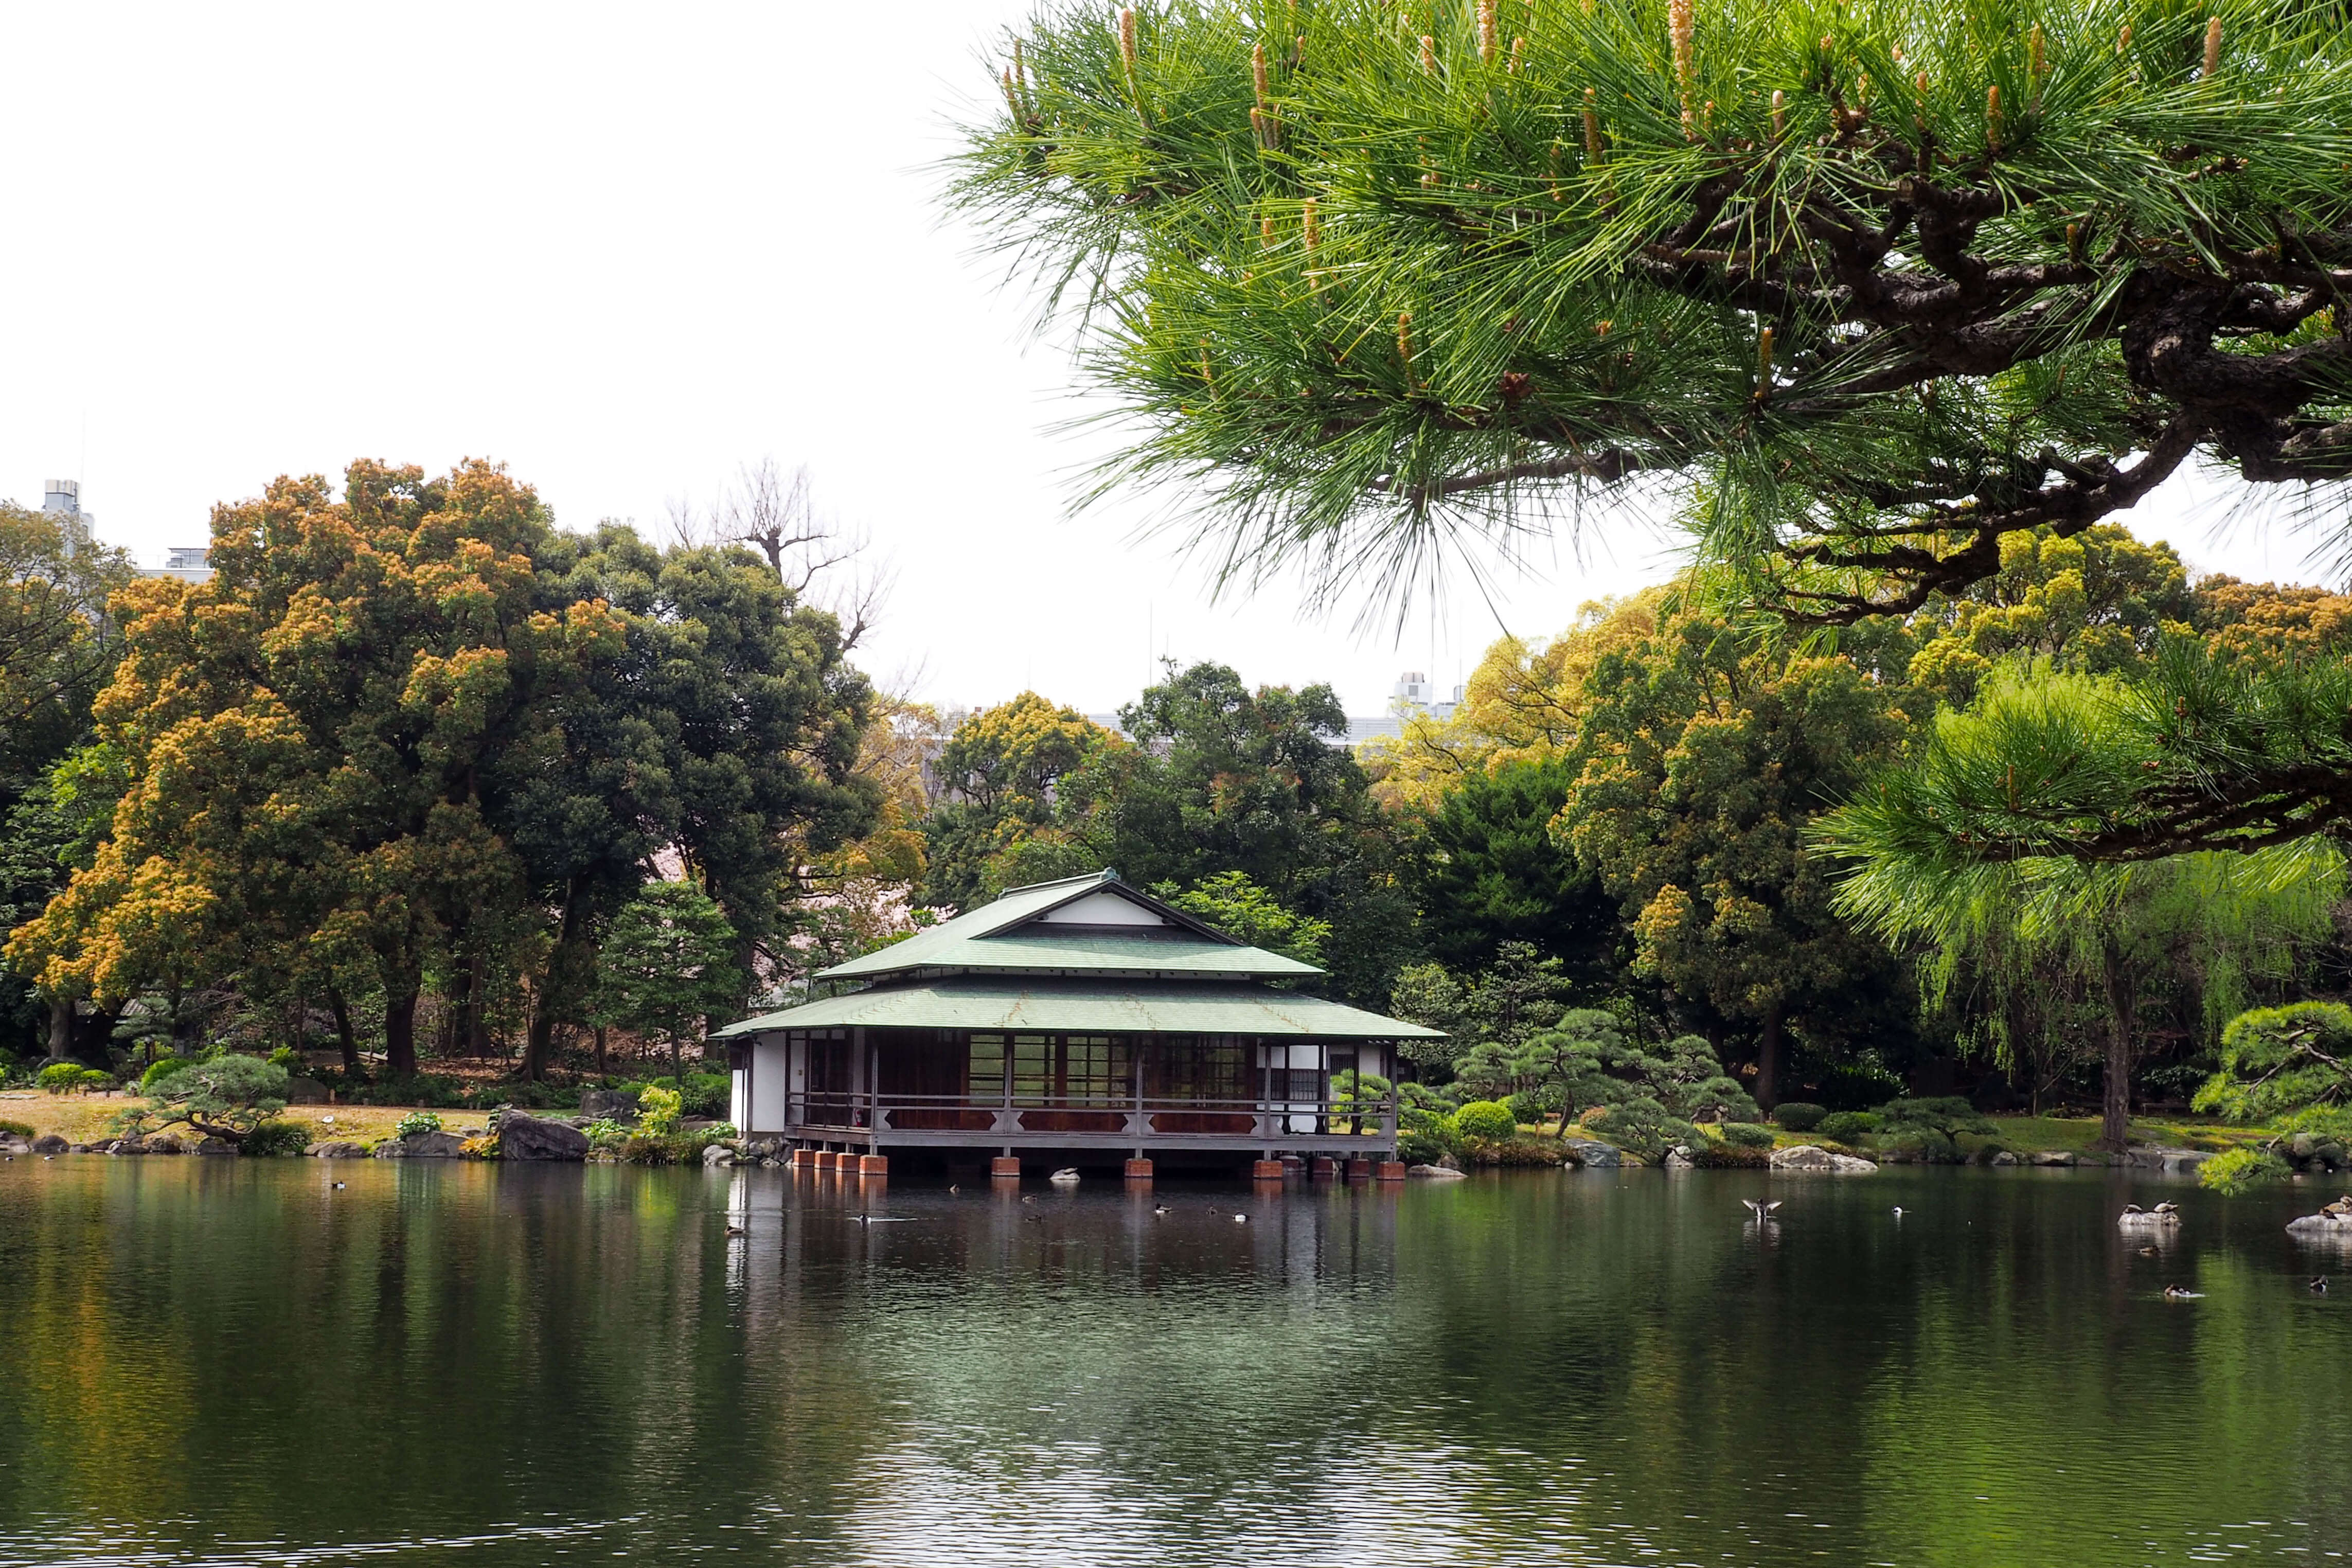 東京清澄白河⎮日本庭園巡禮 來去清澄庭園賞櫻